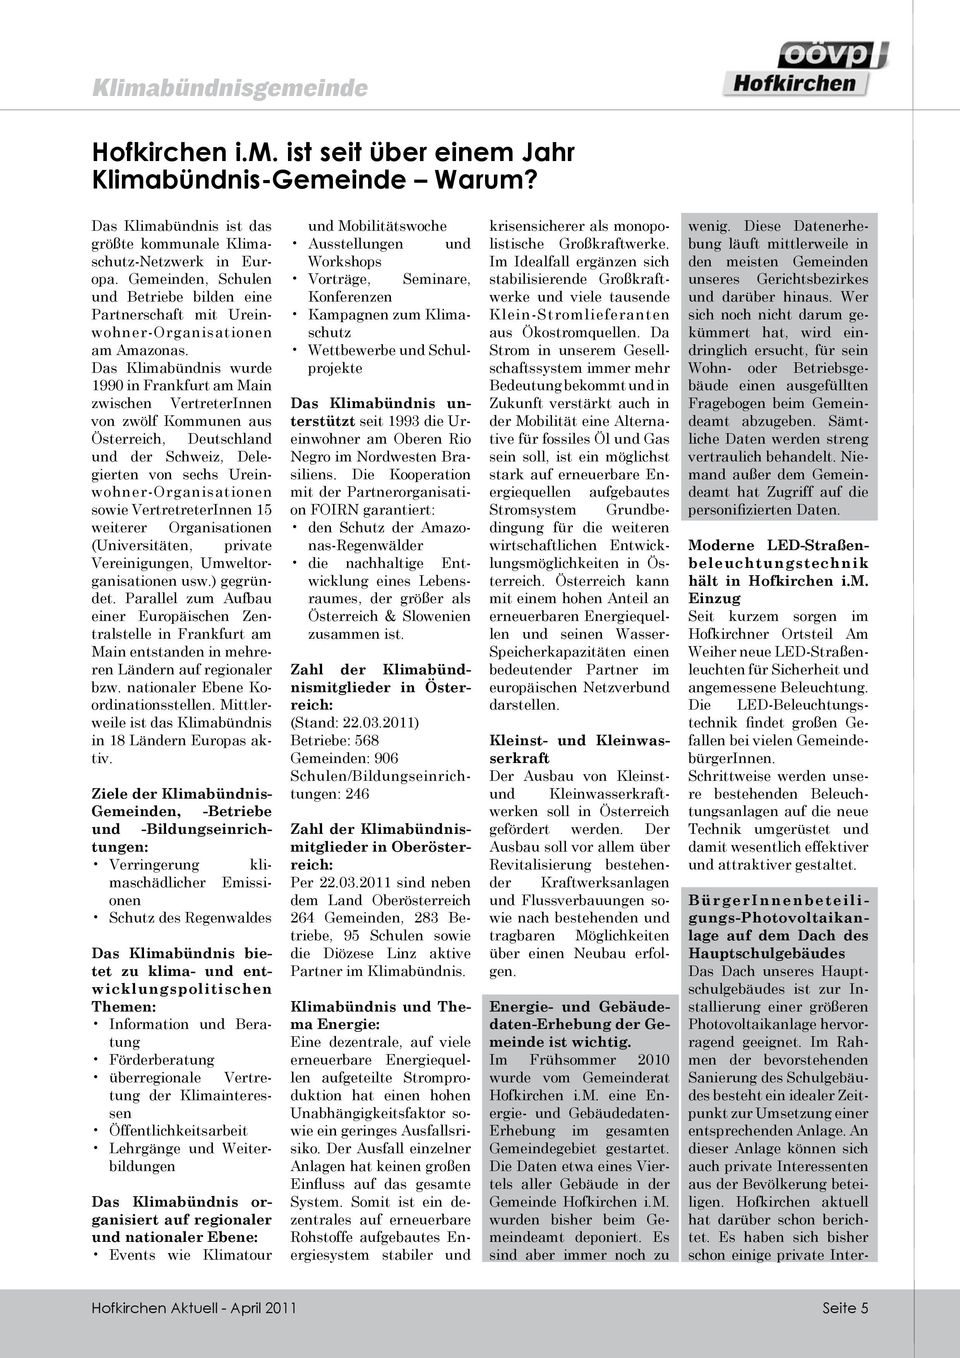 Das Klimabündnis wurde 1990 in Frankfurt am Main zwischen VertreterInnen von zwölf Kommunen aus Österreich, Deutschland und der Schweiz, Delegierten von sechs Ureinwohner-Organisationen sowie